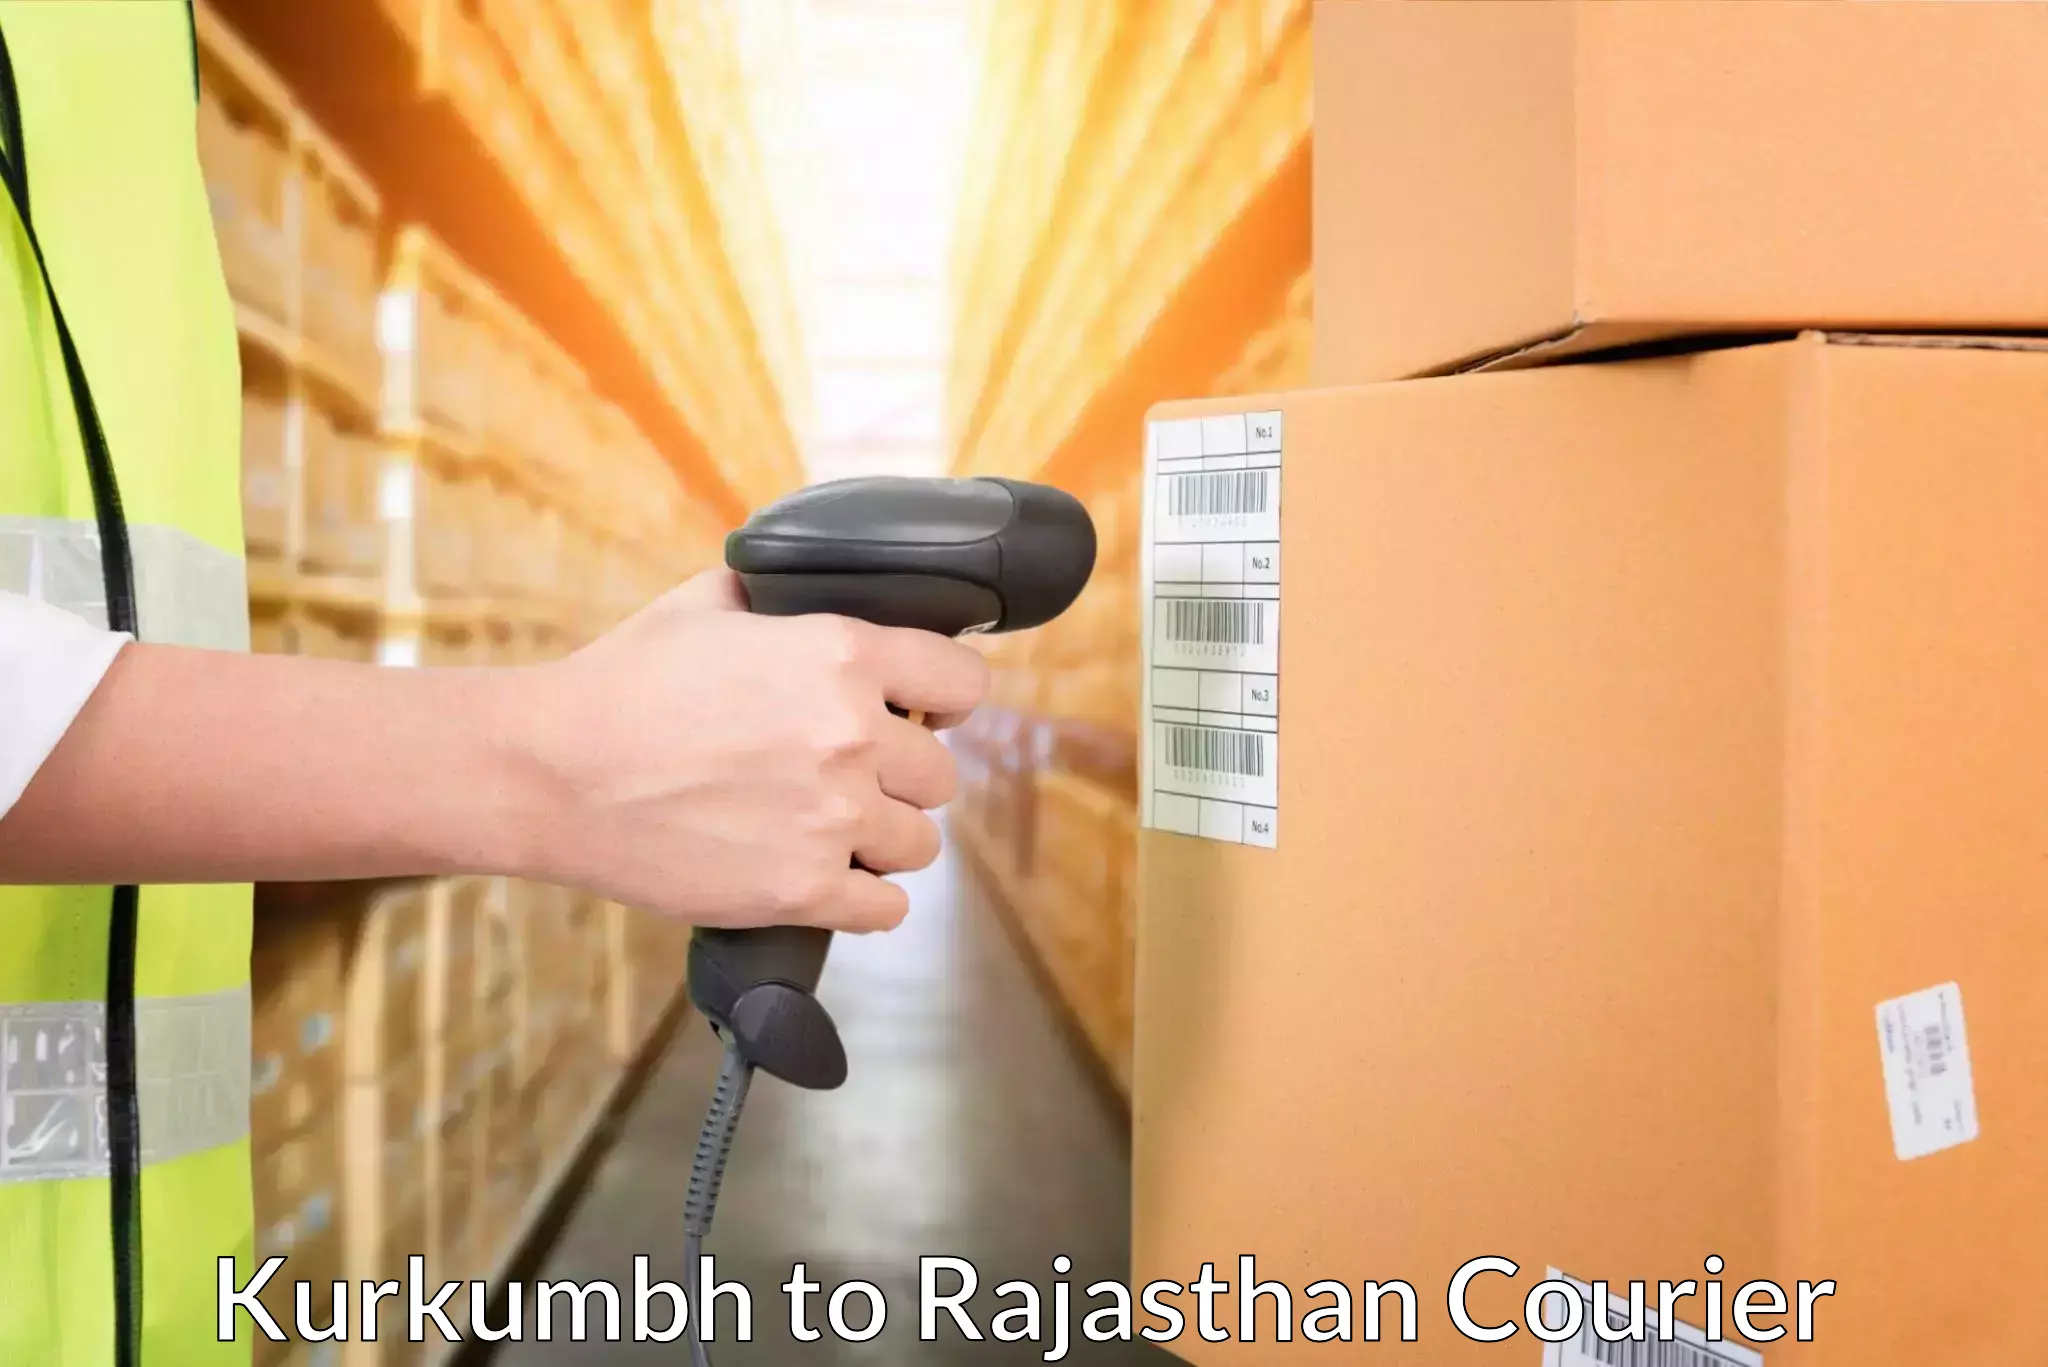 Comprehensive logistics Kurkumbh to Banar